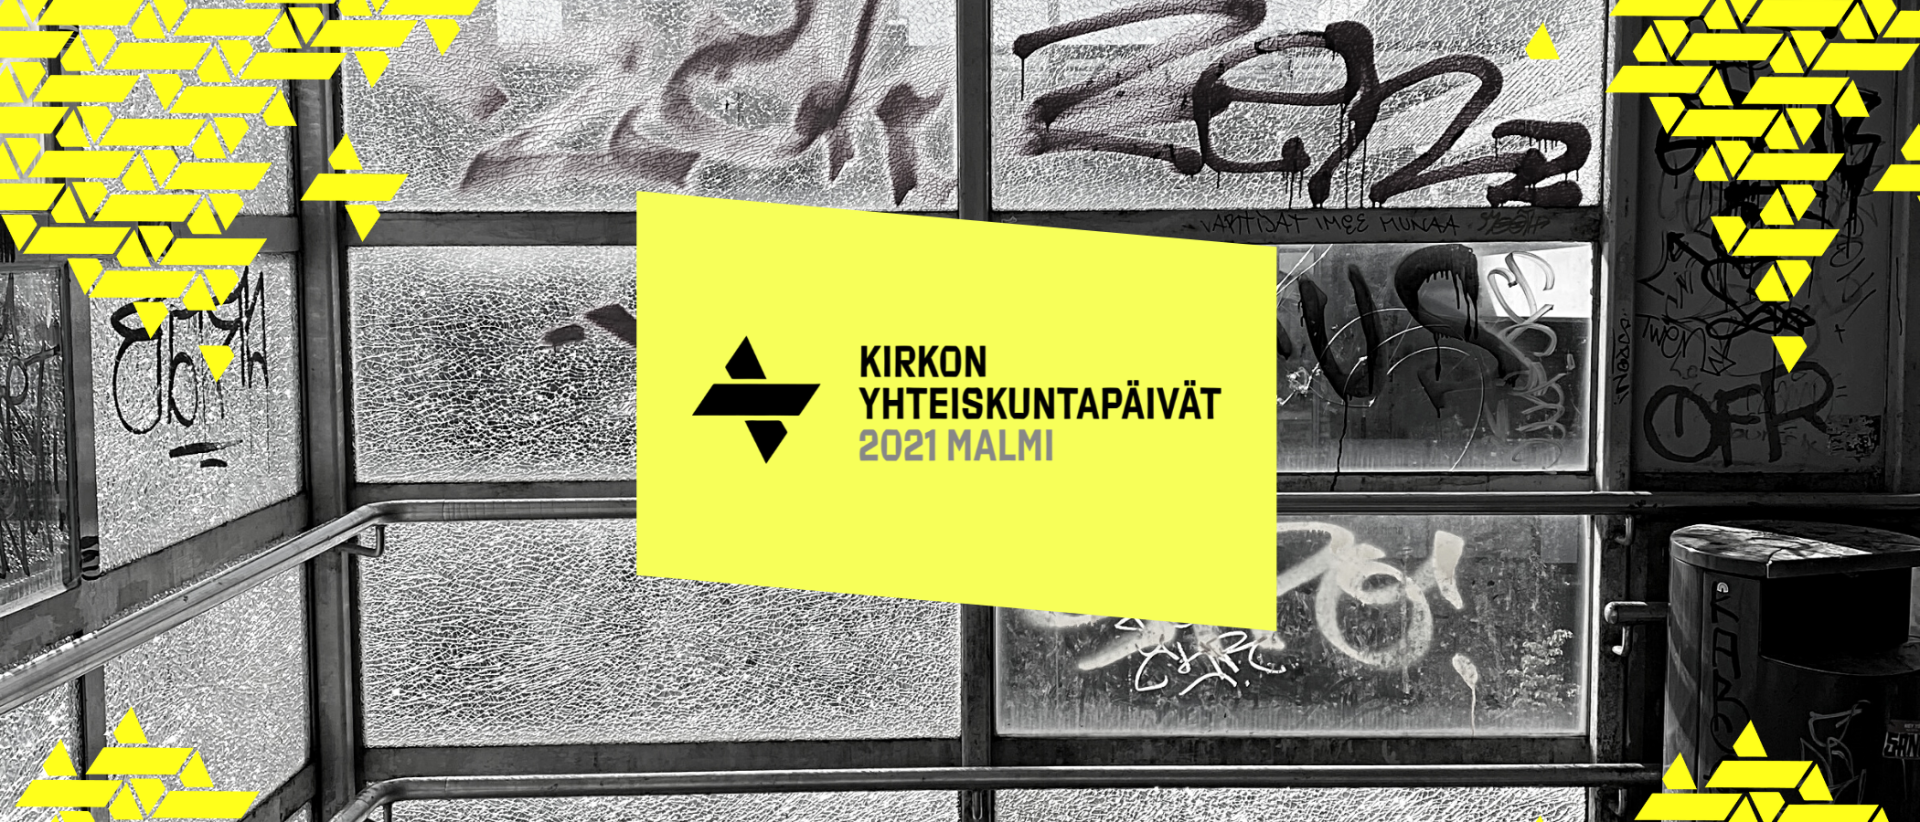 Graffitiseinän päällä keltainen neliö, jossa teksti: Kirkon yhteiskuntapäivät 2021 Malmi